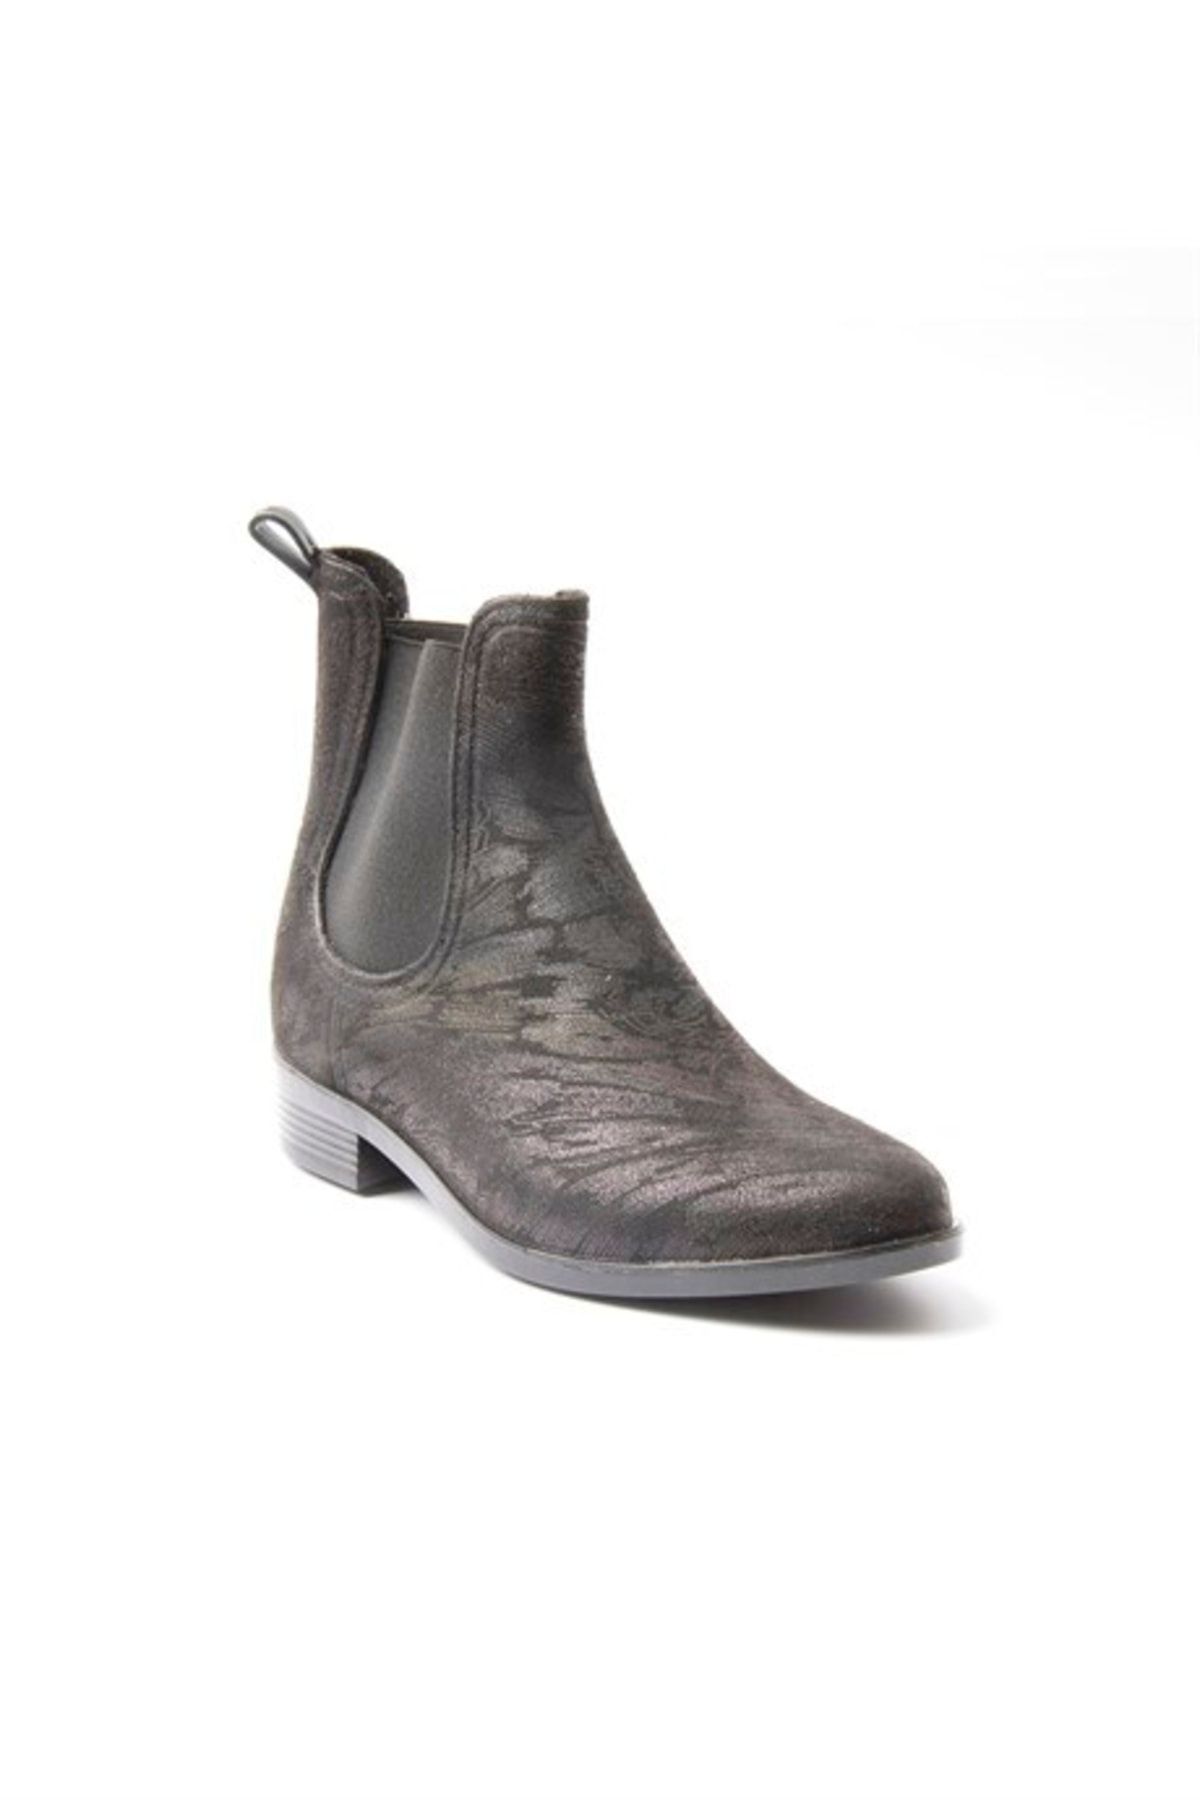 Lisanslı Markalar Casual Boots Kadın Yağmur Botları New Fashion